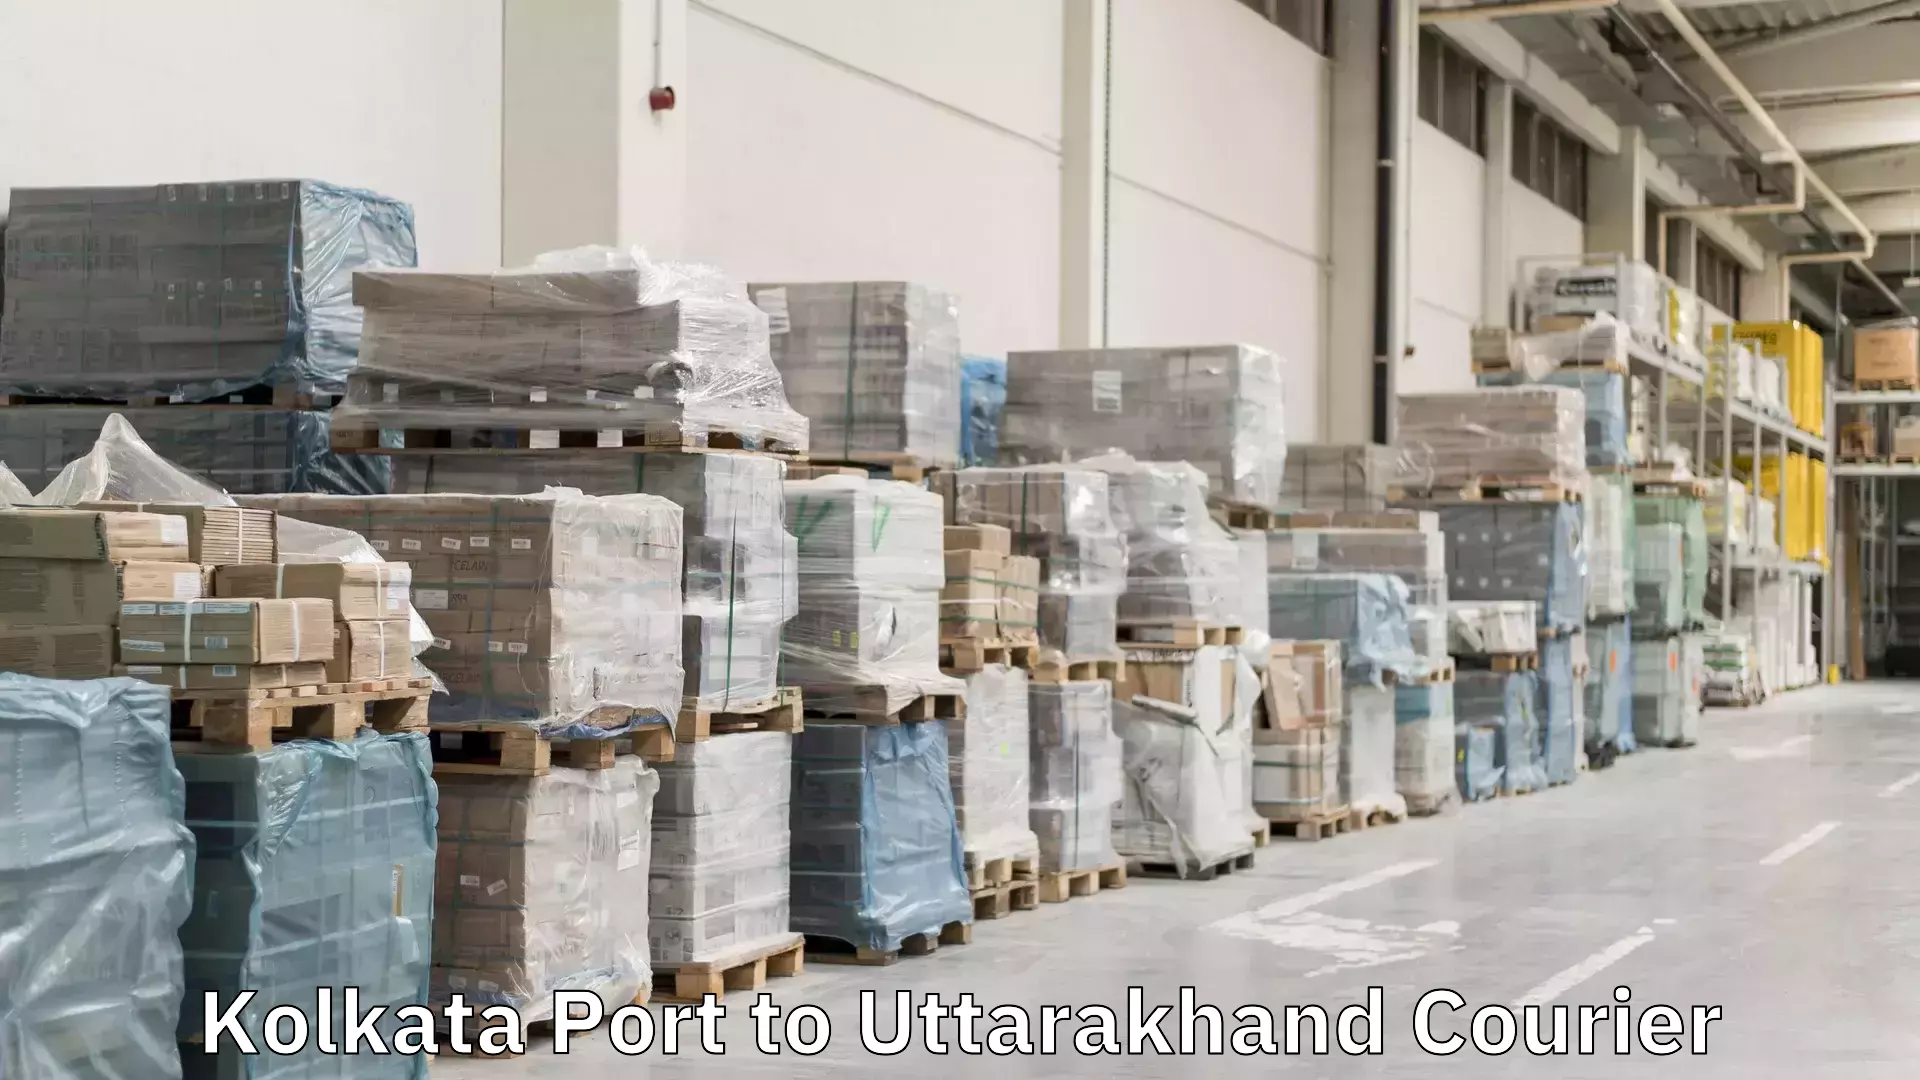 Personal courier services Kolkata Port to Uttarakhand